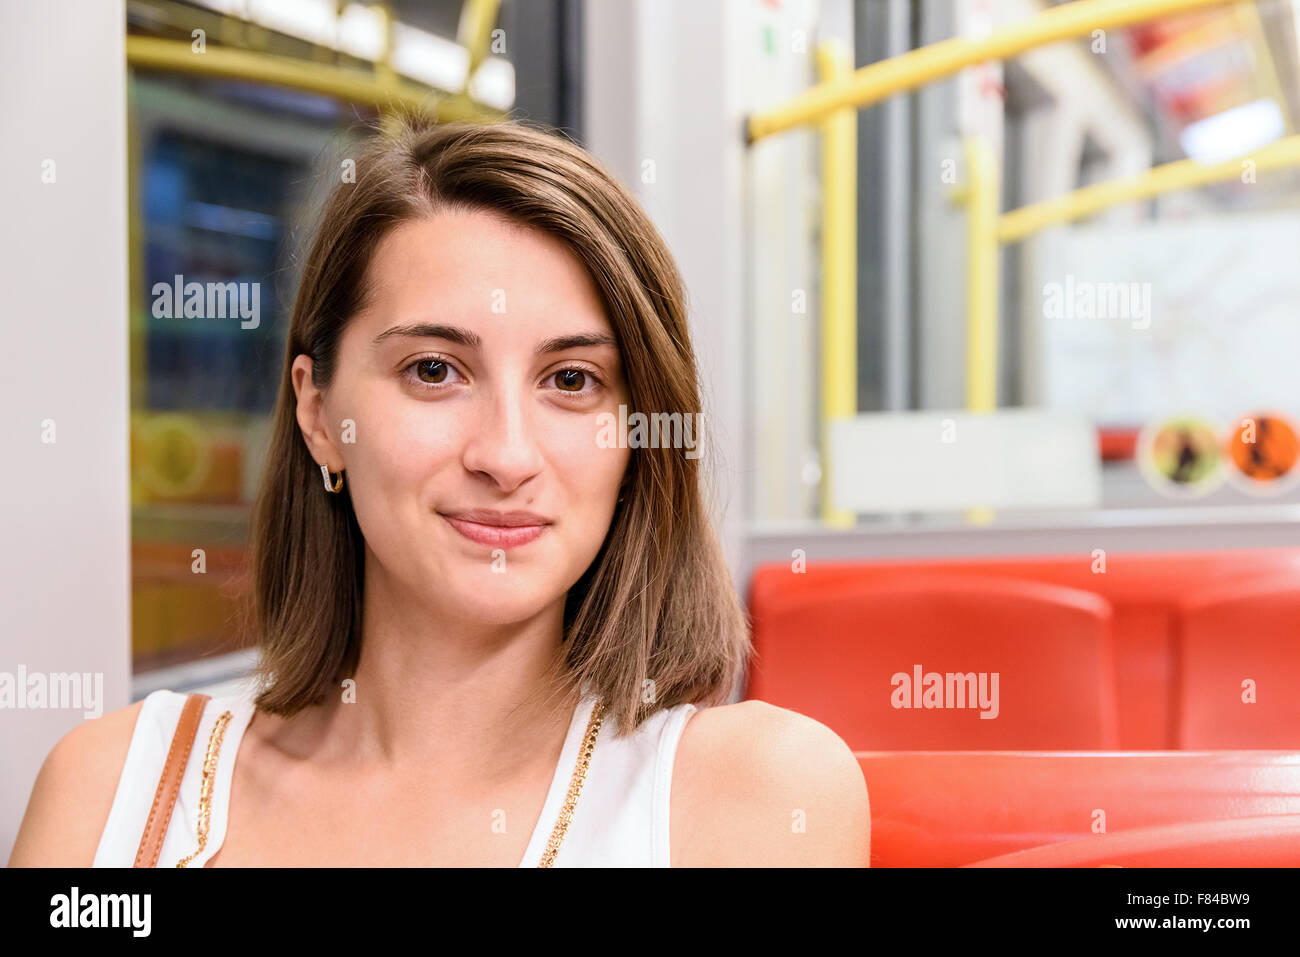 Jeune fille le métro Transports Banque D'Images